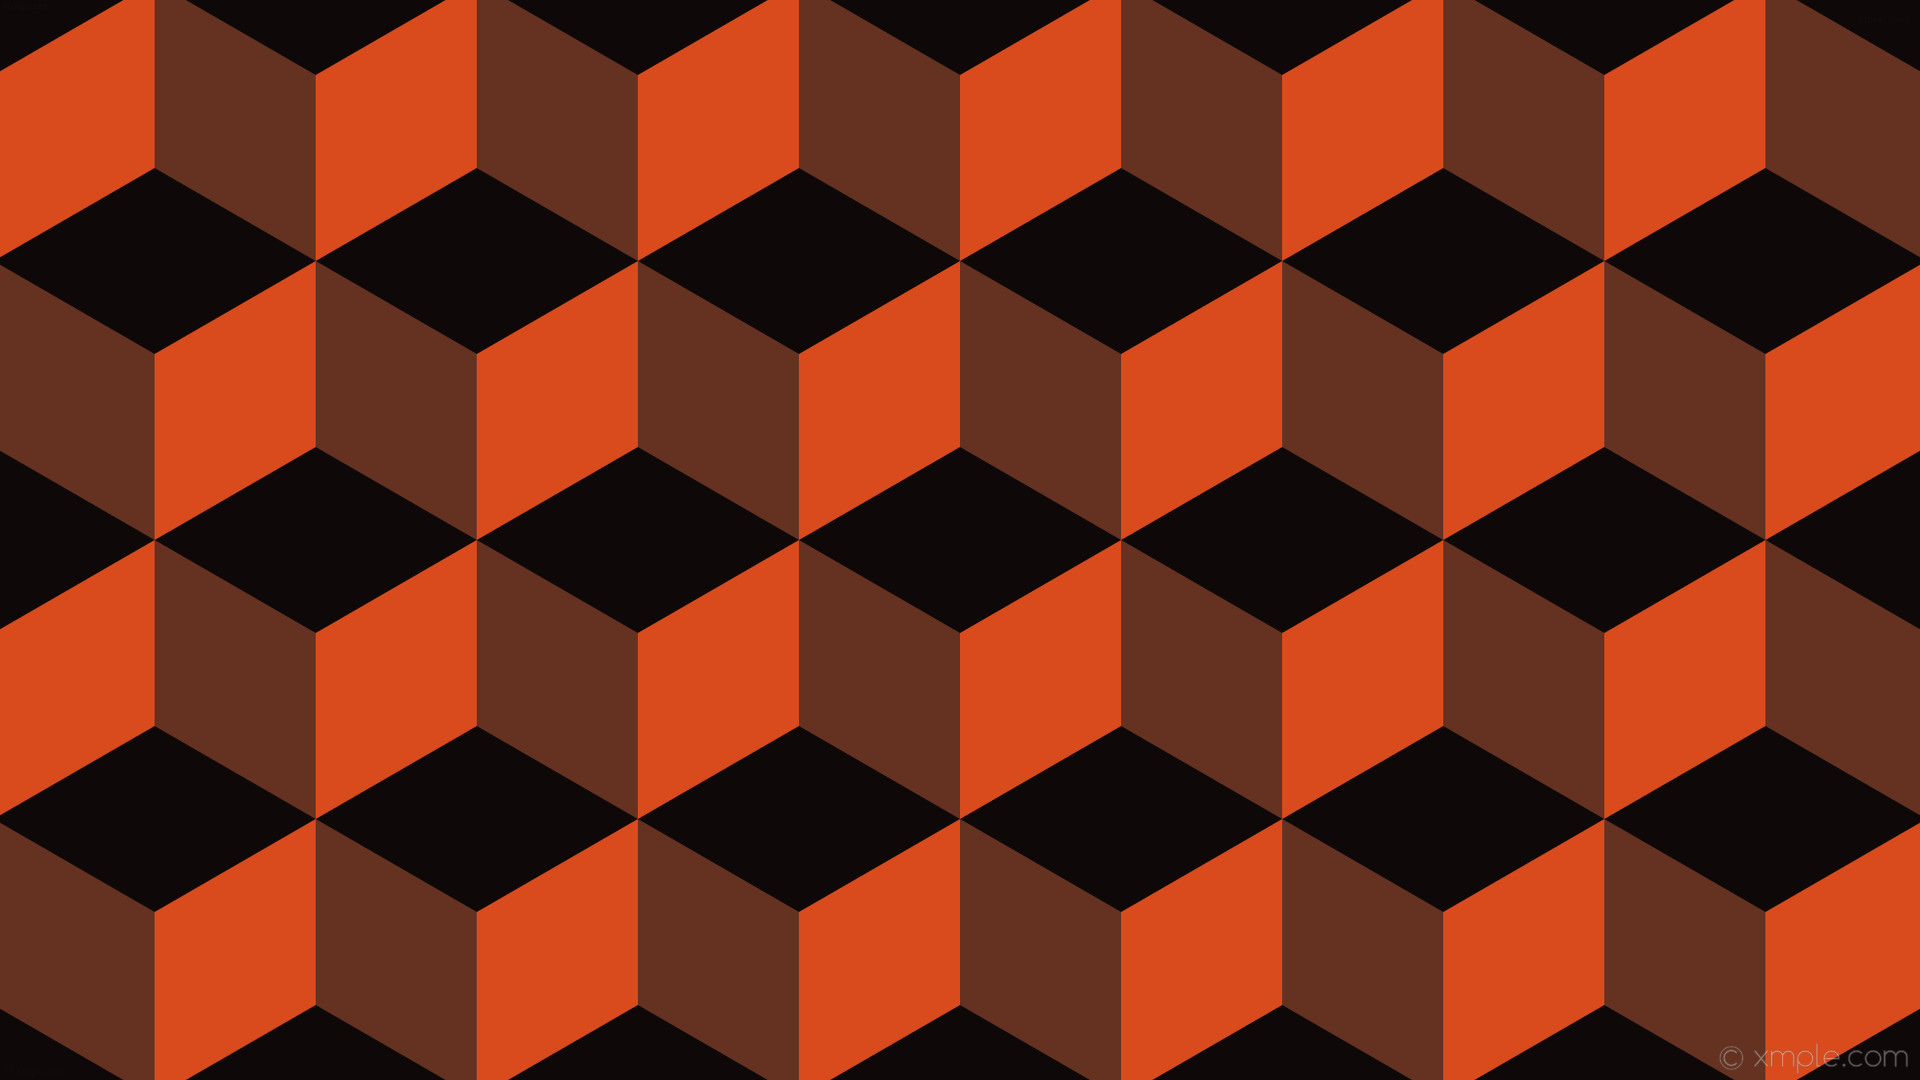 1920x1080 wallpaper black orange red 3d cubes #0e0908 #653221 #d94b1d 0Â° 186px